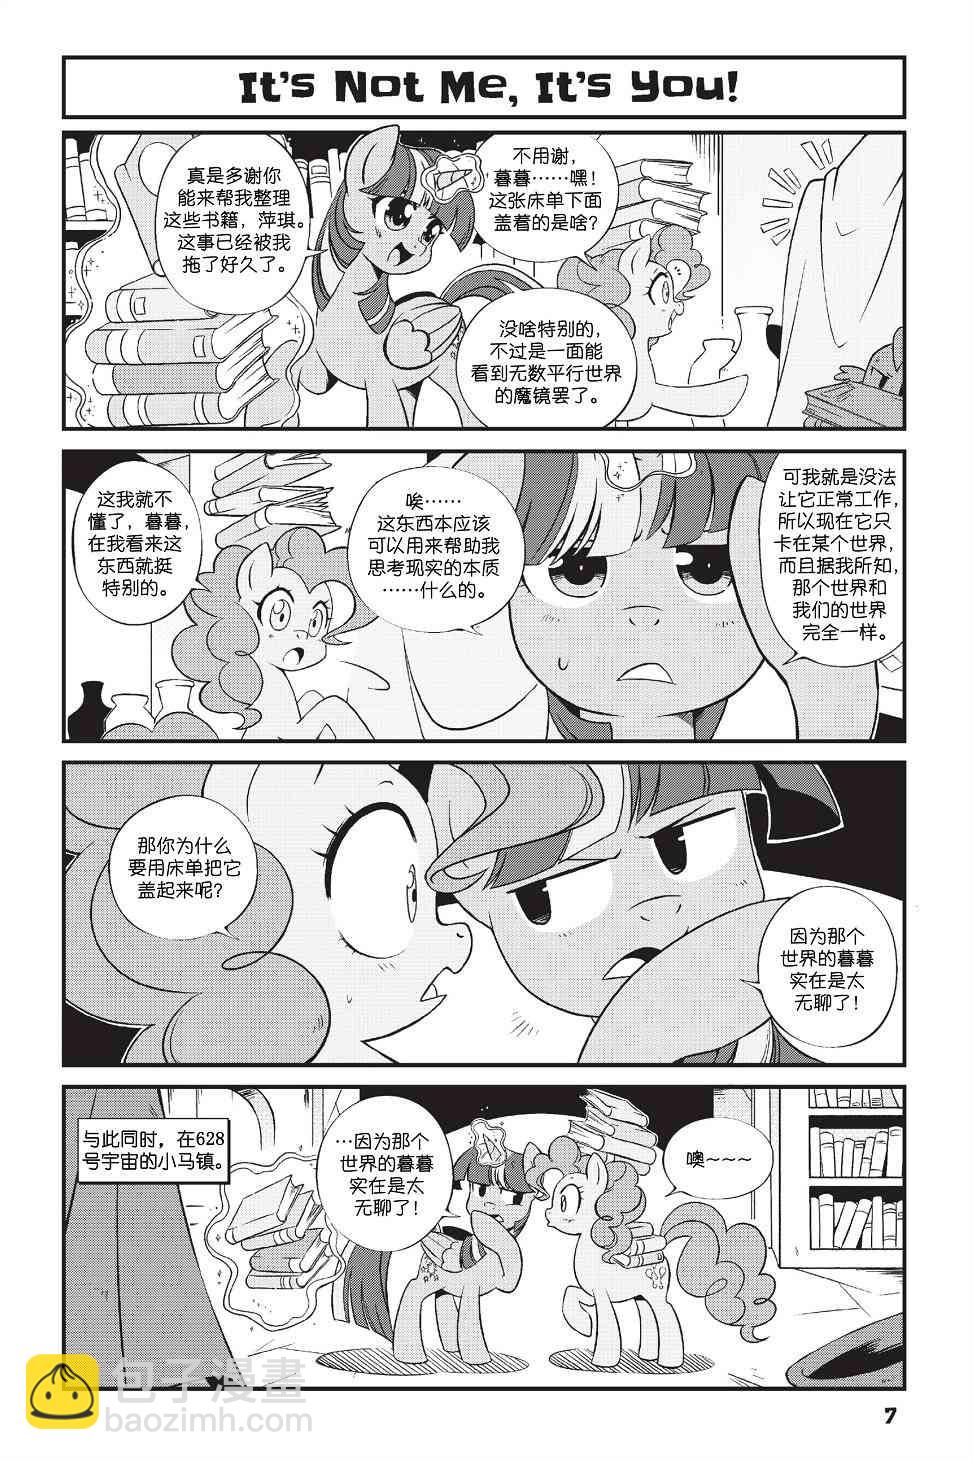 彩虹小馬G4：友情就是魔法 - 新日版漫畫第01部第01話 - 4